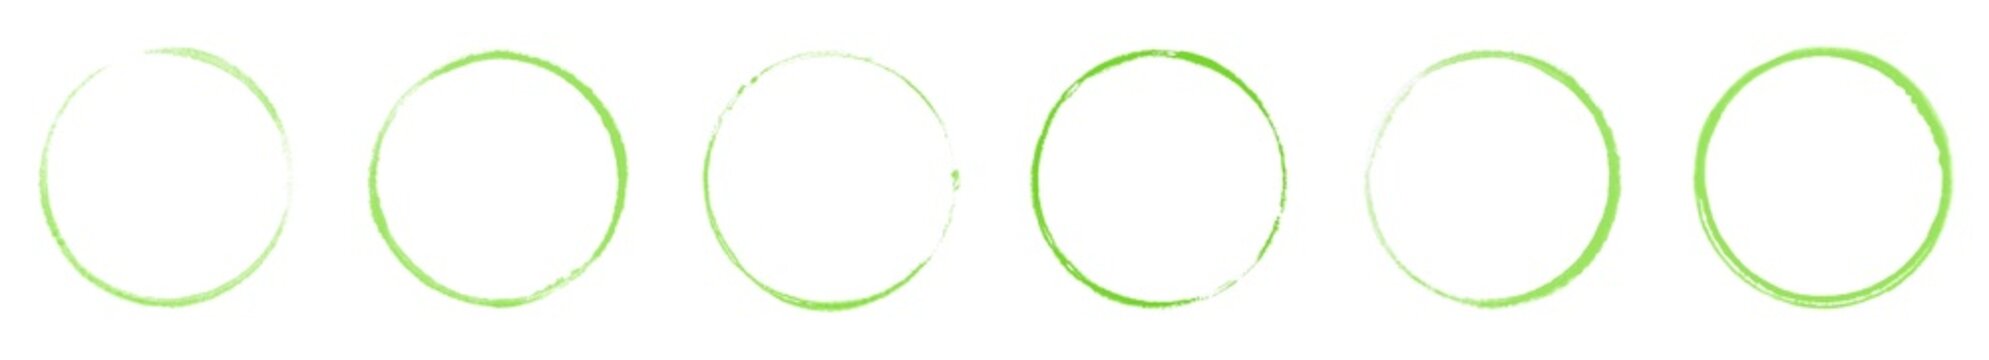 Banner mit 6 grünen handgemalten Kreisen oder Abdrücken